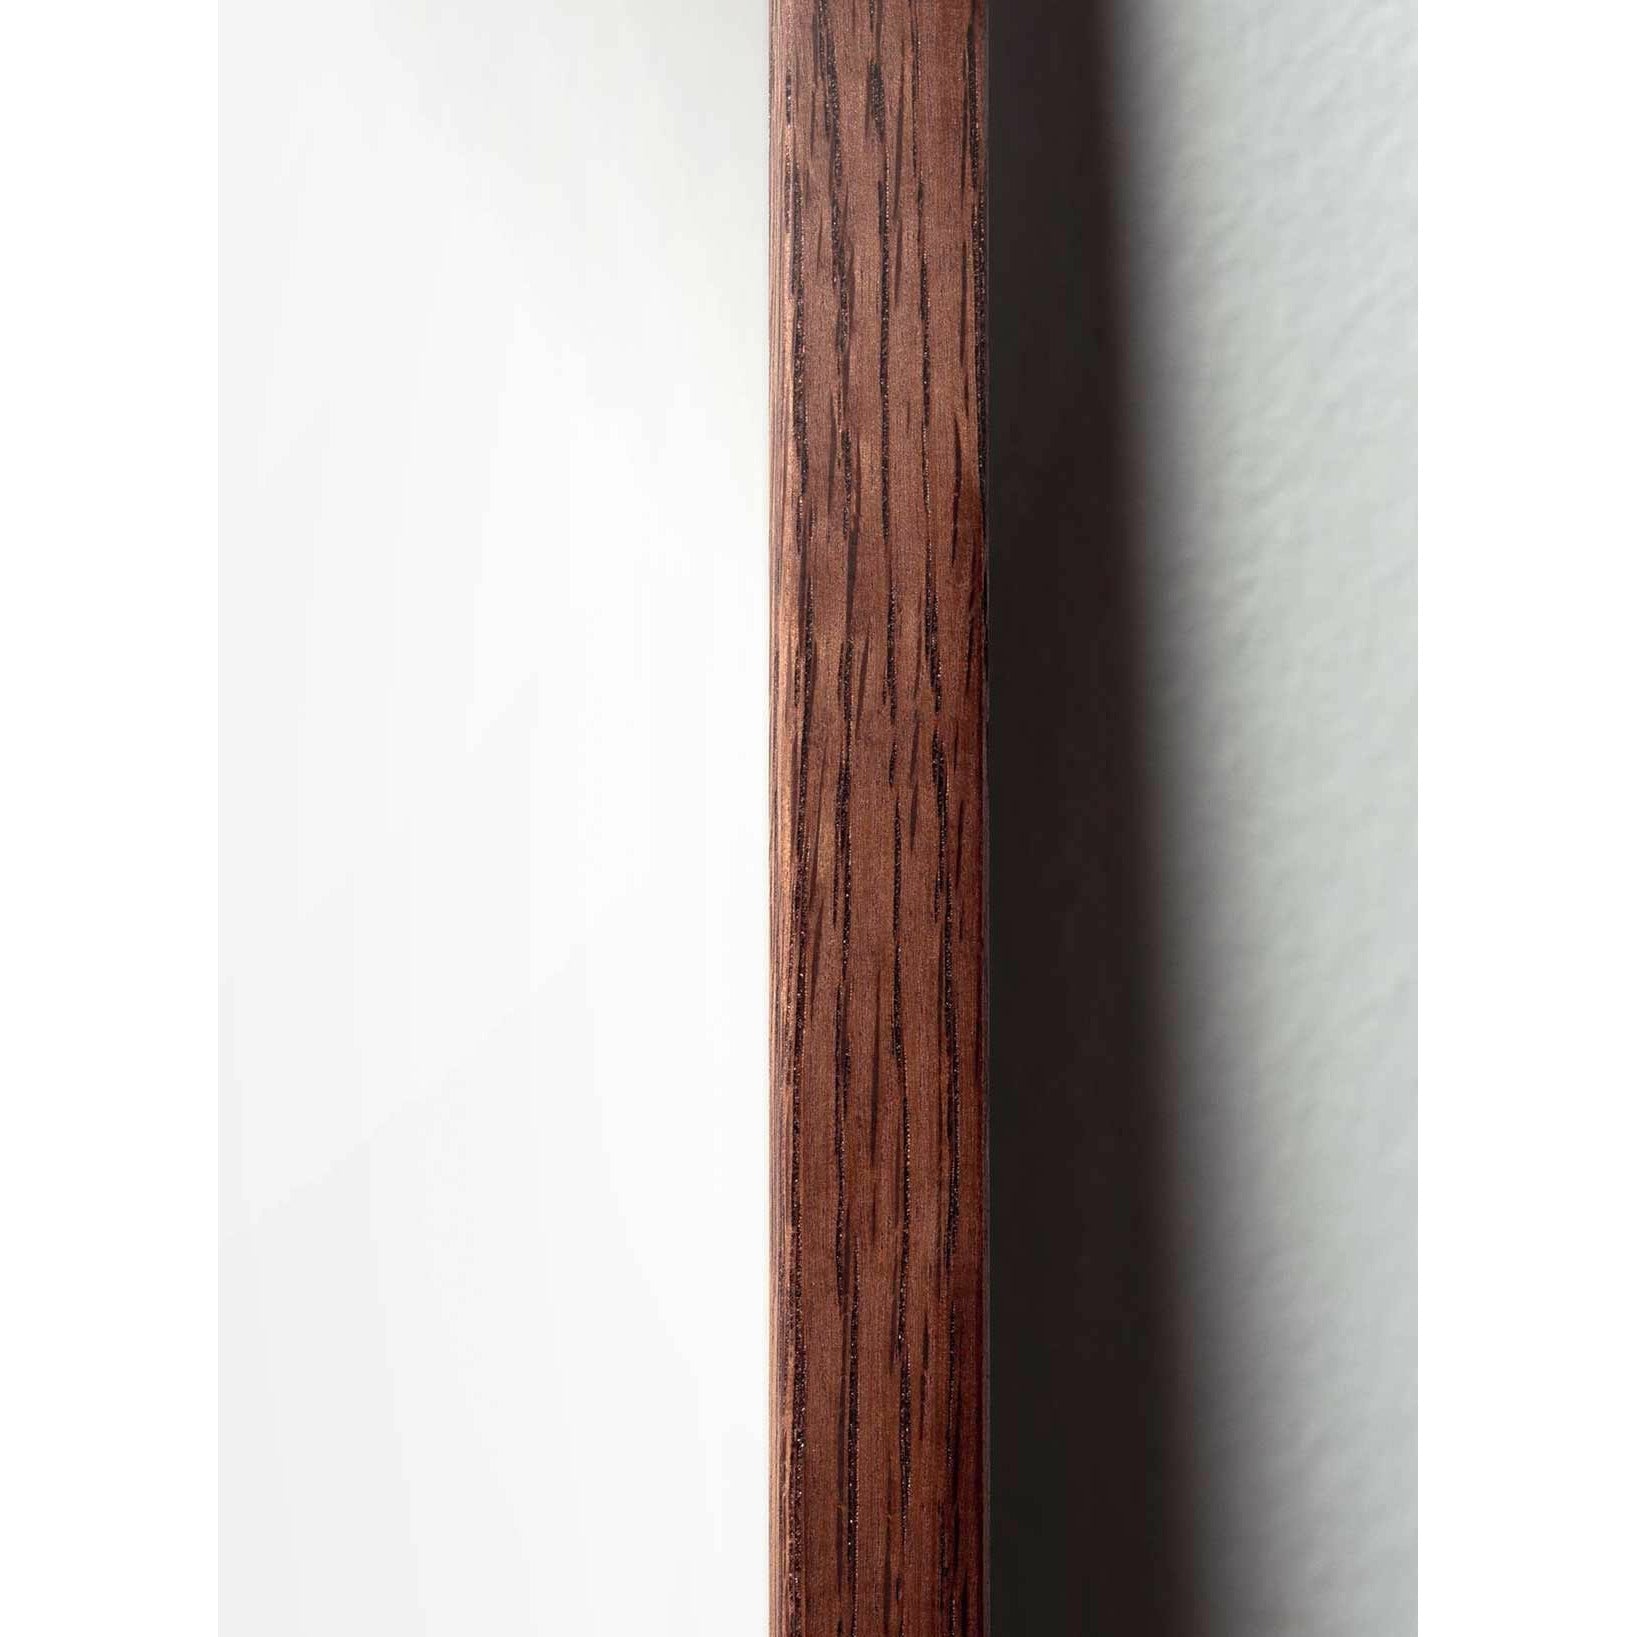 Plakát Pine Cone Line Pine Cone, rám vyrobený z tmavého dřeva 30x40 cm, bílé pozadí